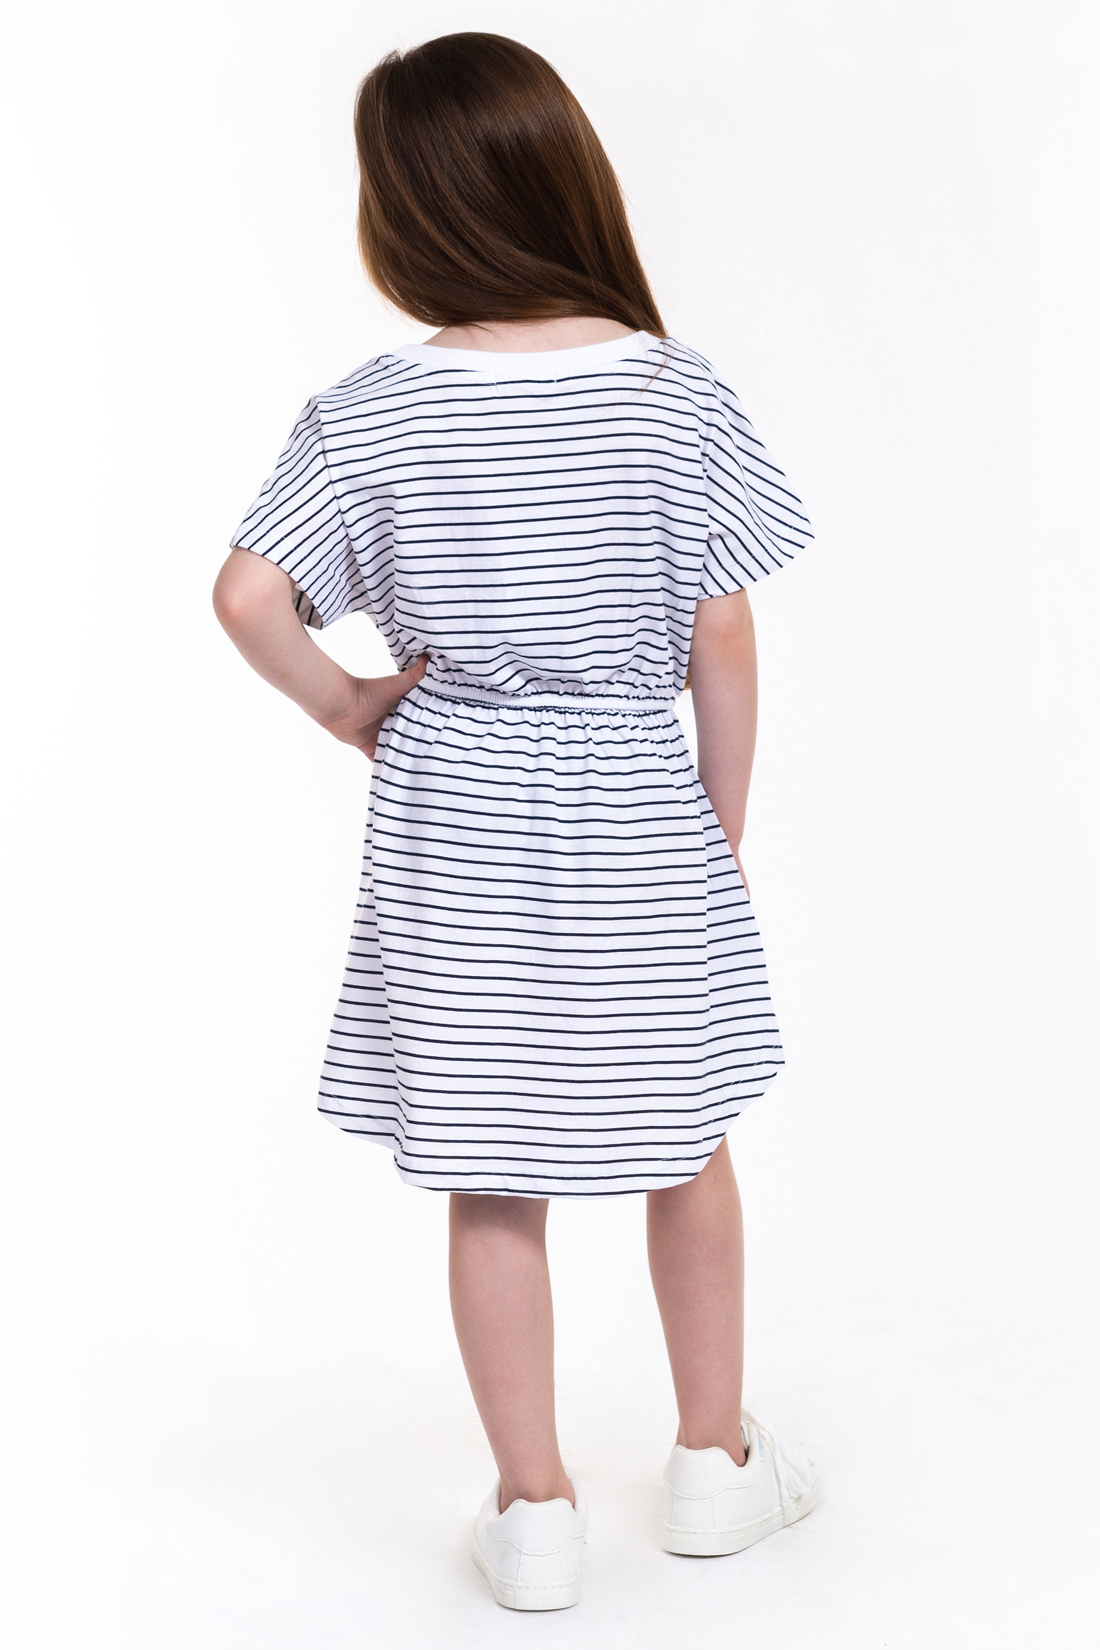 Платье для девочки (арт. baon BK459005), размер 122-128, цвет белый Платье для девочки (арт. baon BK459005) - фото 5